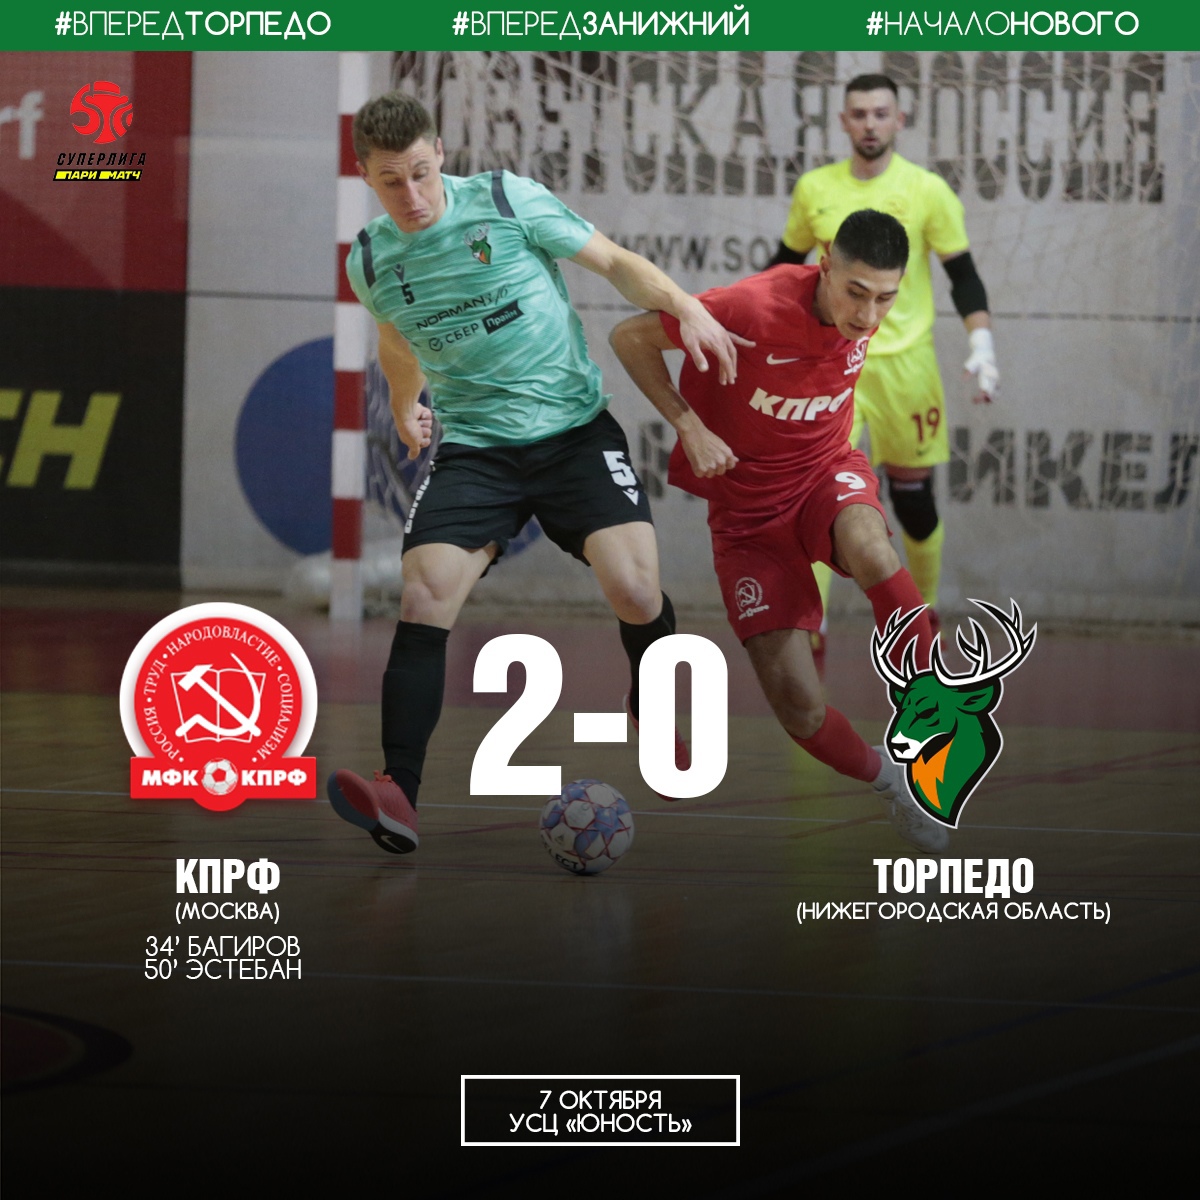 Нижегородское «Торпедо» проиграло КПРФ в первом матче сезона